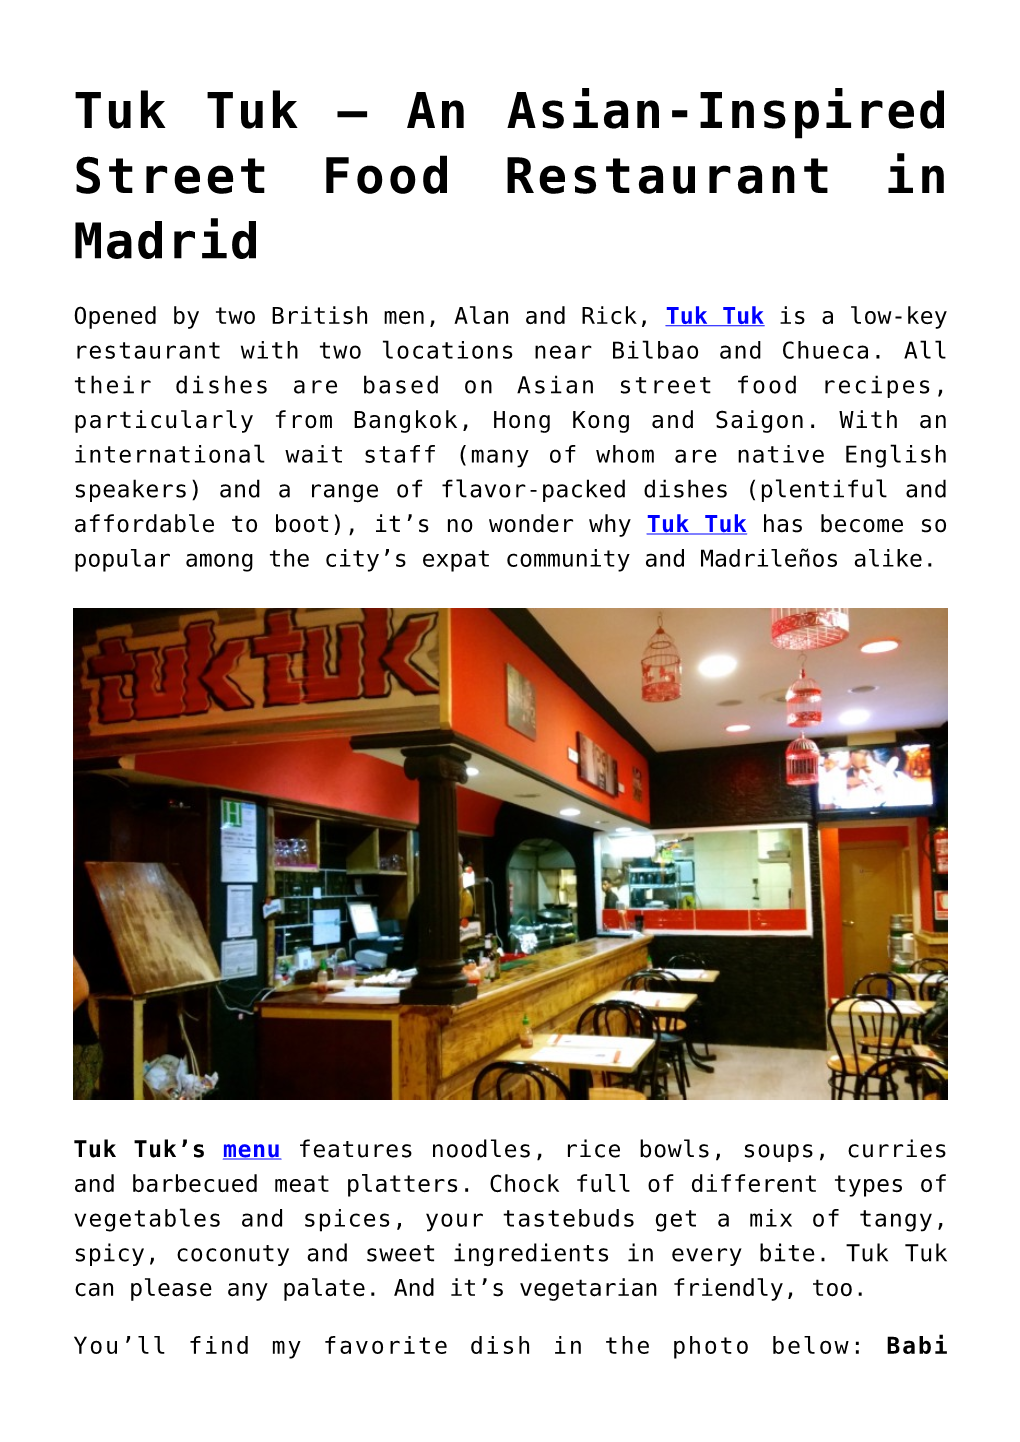 Tuk Tuk – an Asian-Inspired Street Food Restaurant in Madrid